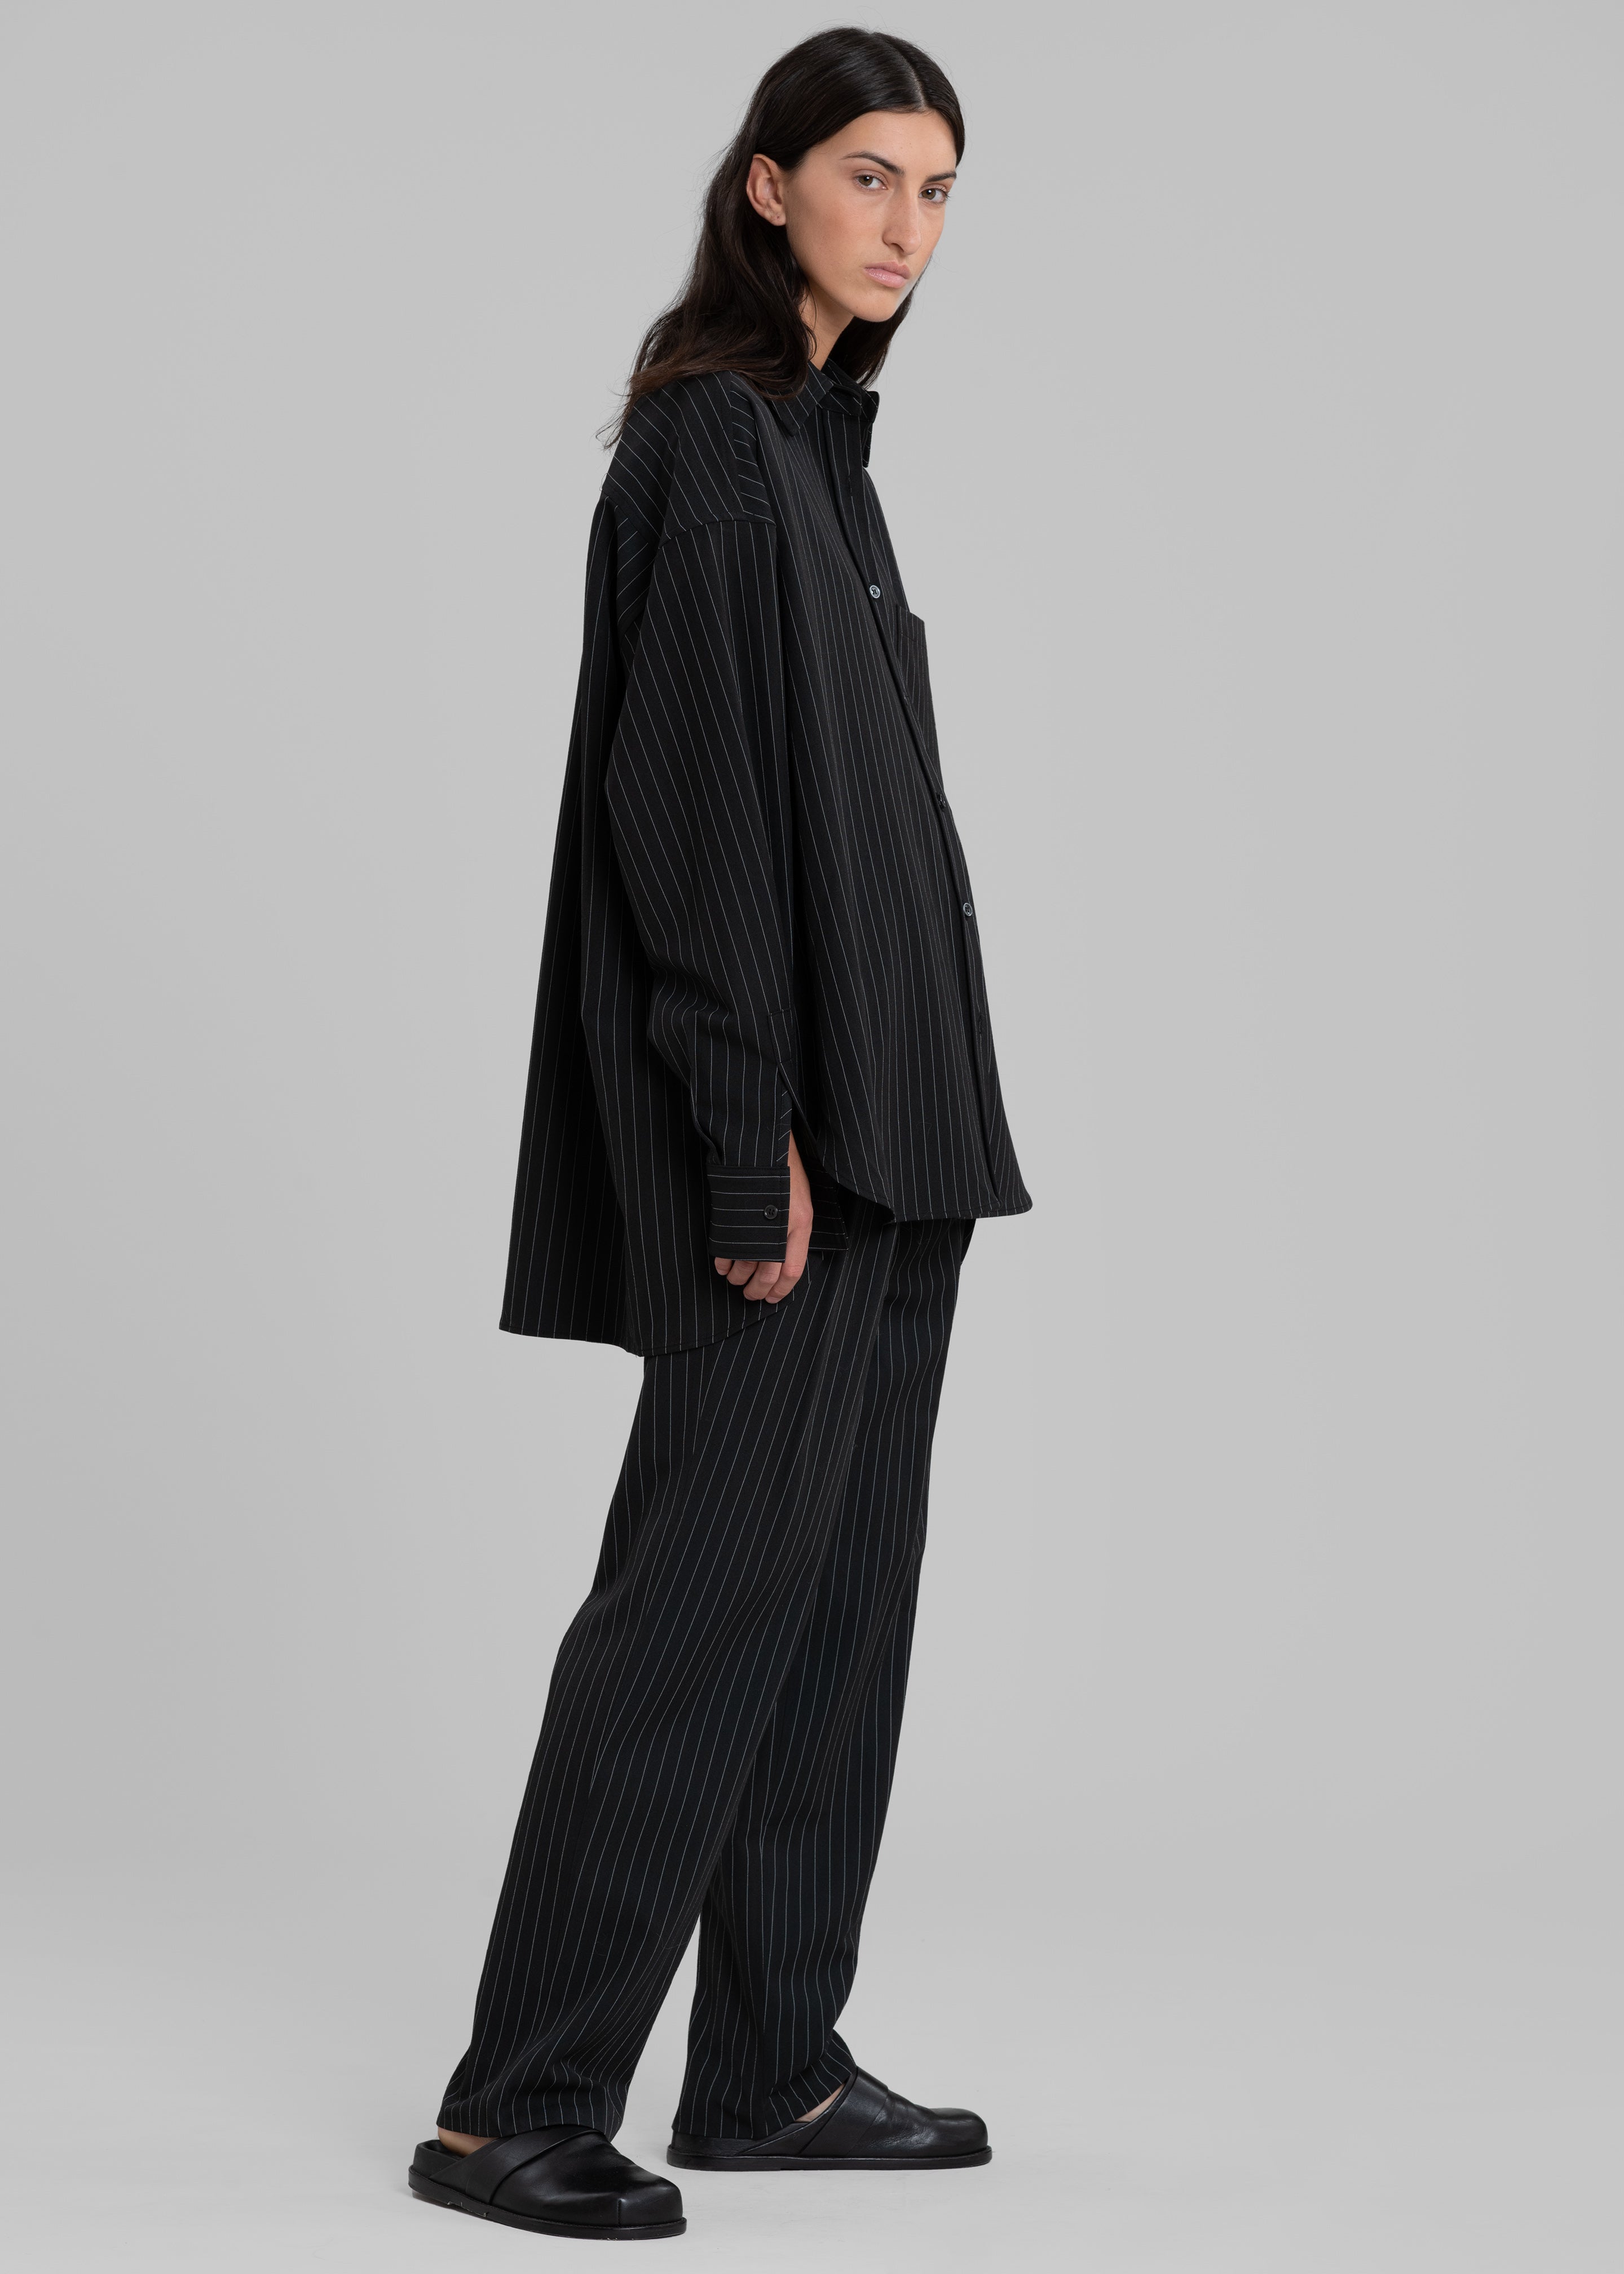 Bea Fluid Pinstripe Suit Pants - Black/White - 6